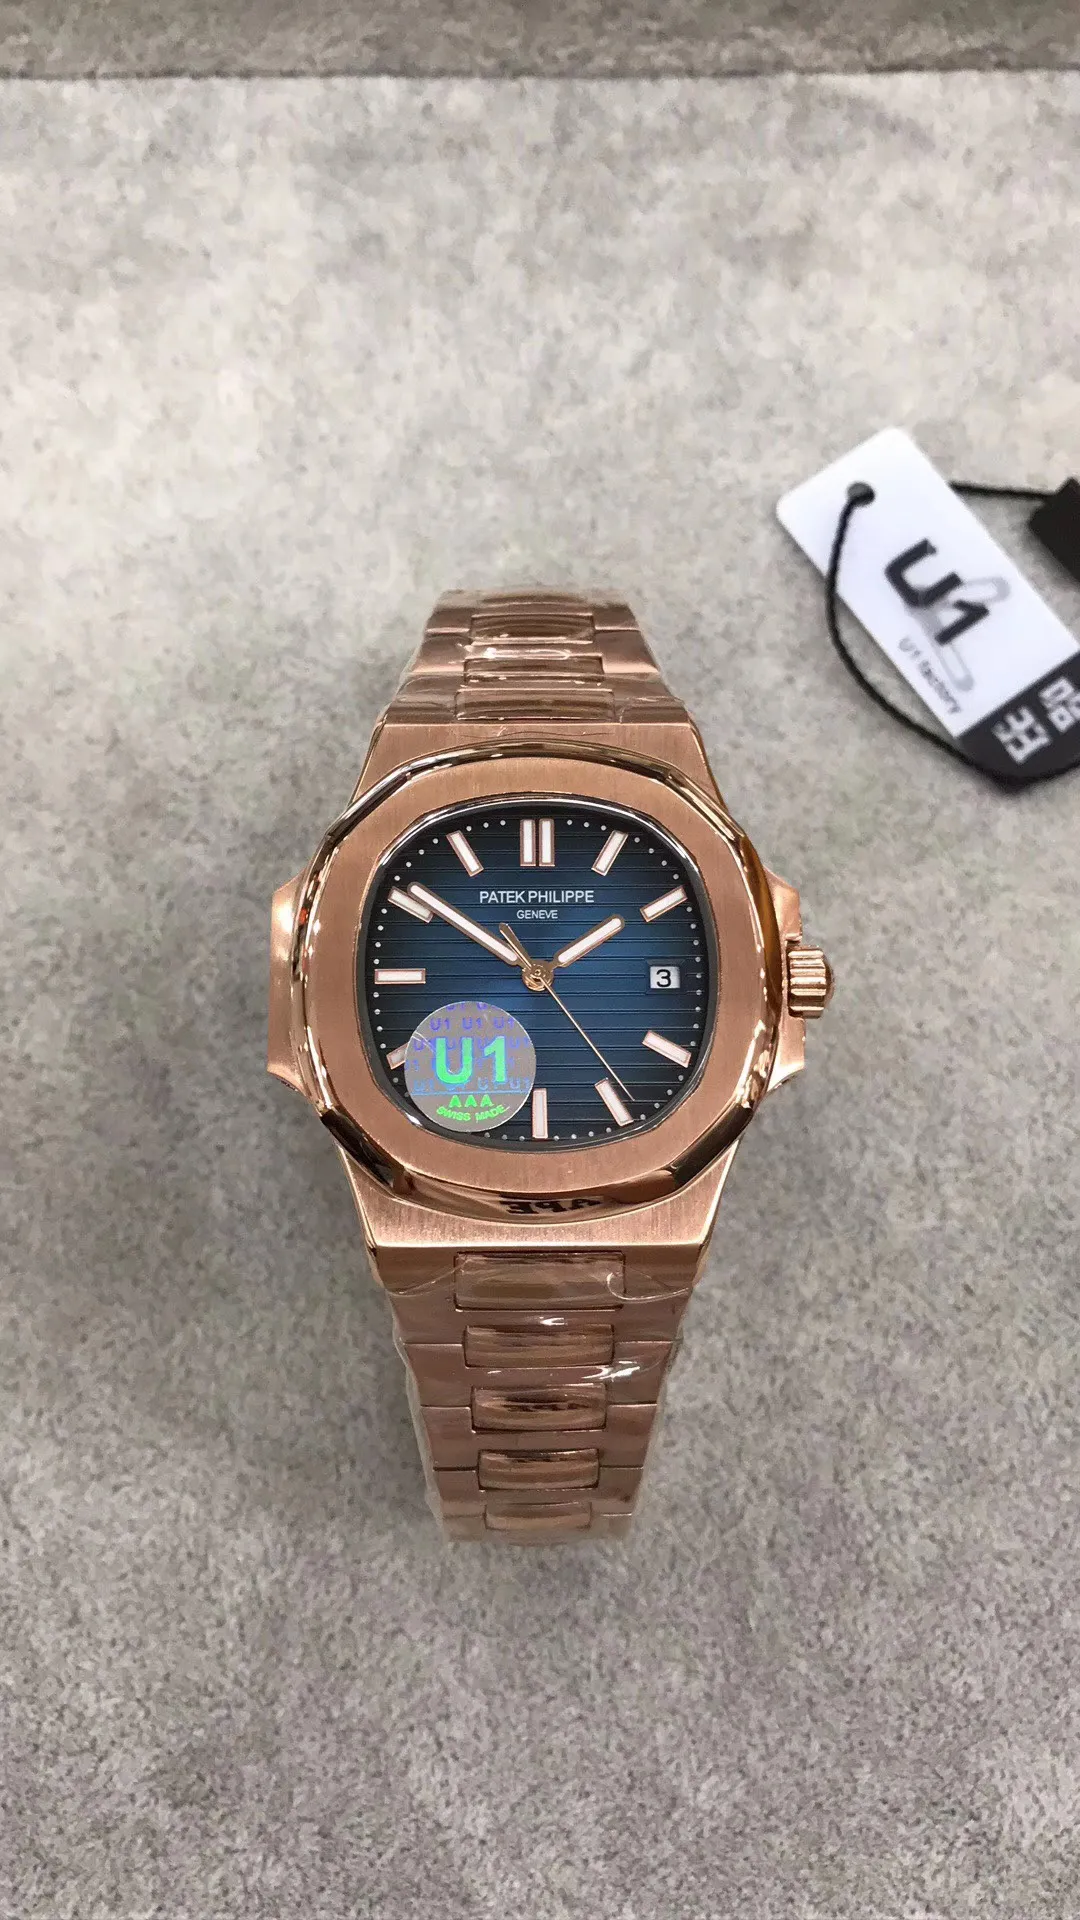 Los hombres clásicos U1 hacen relojes completos de oro rosa de 18 k pulsera en blanco y negro 324 trainspotter 40 mm reloj mecánico automático azul ge3162